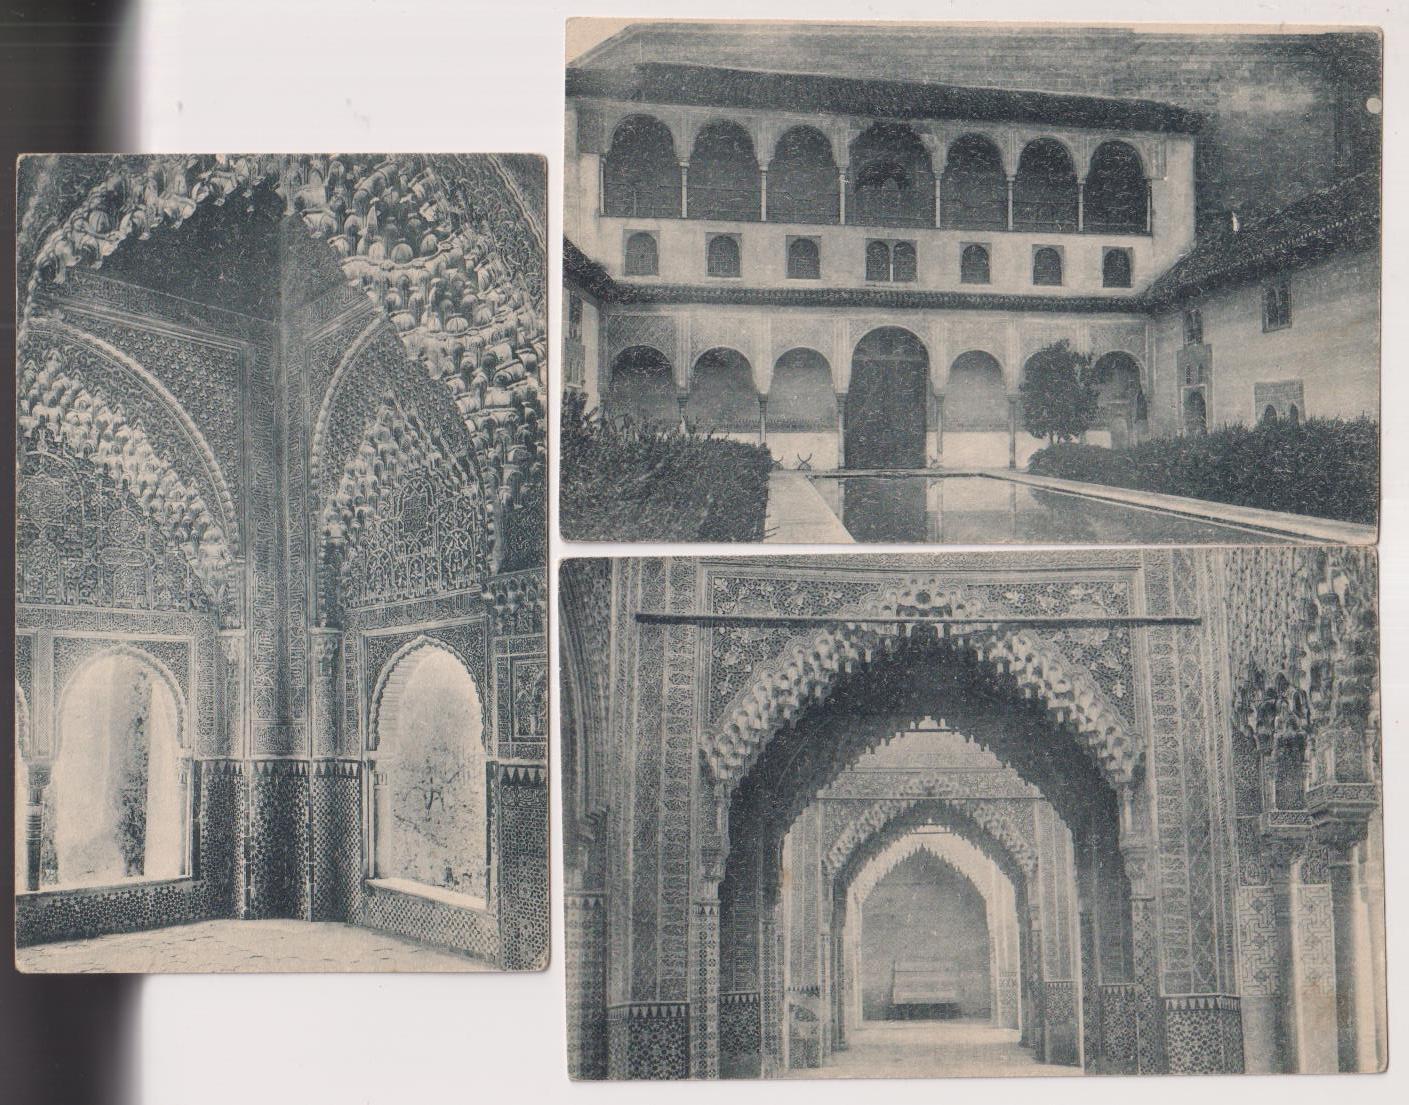 Granada, Alhambra. 3 Postales. Grafos 35,40 y 43. Años 20. P. de los arrayanes, Sala de Justicia y Mirador de Lindaraja